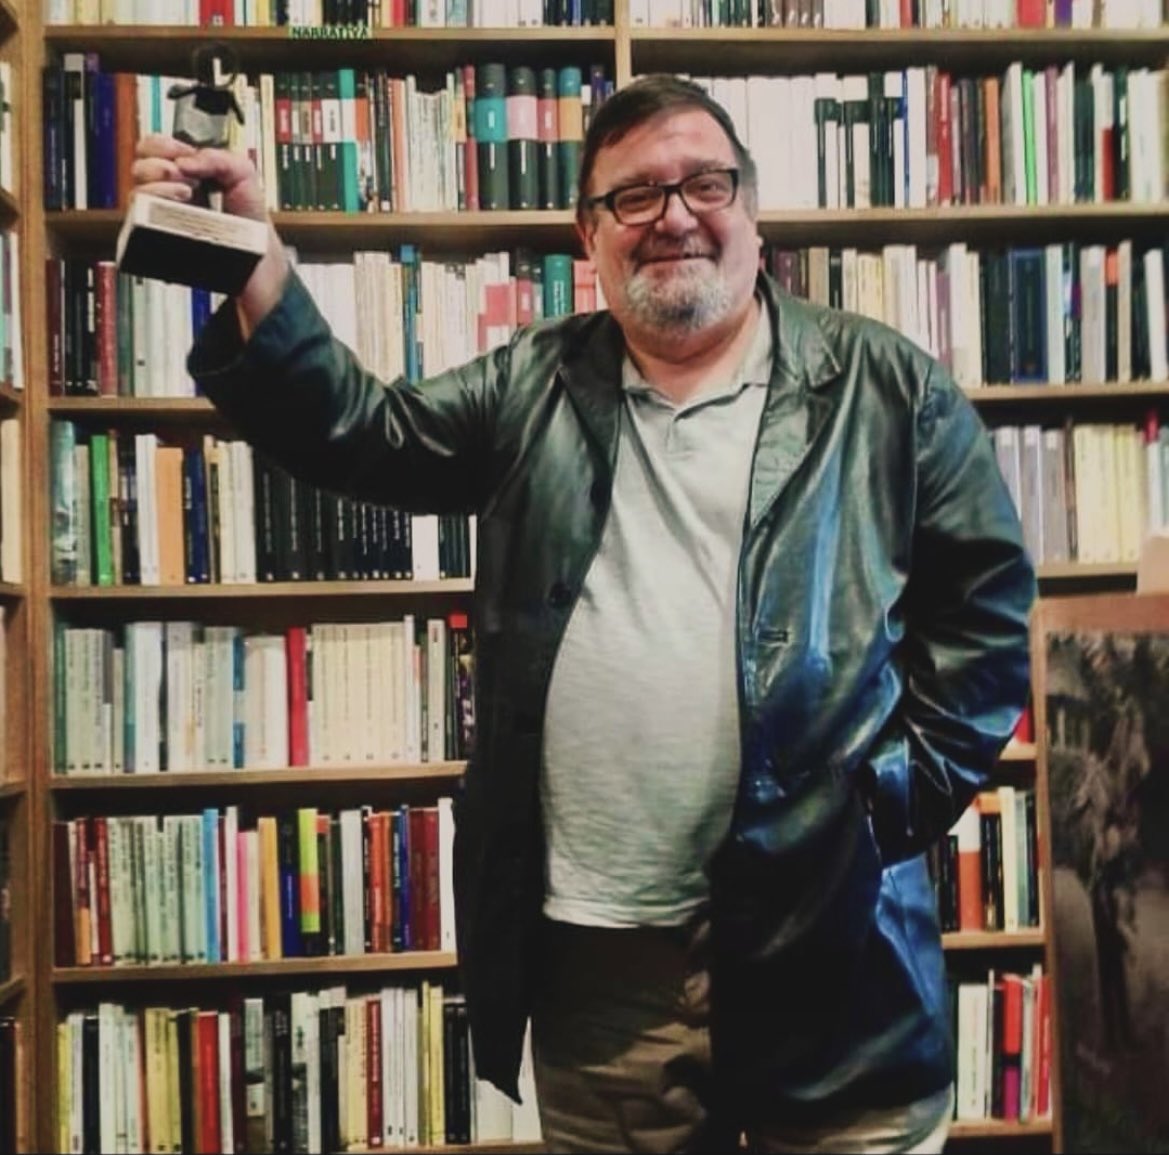 Se ha muerto Miguel Hernández, librero histórico de la librería Antonio Machado. Fue mi librero desde los once años hasta que se jubiló, qué pena más grande, joder